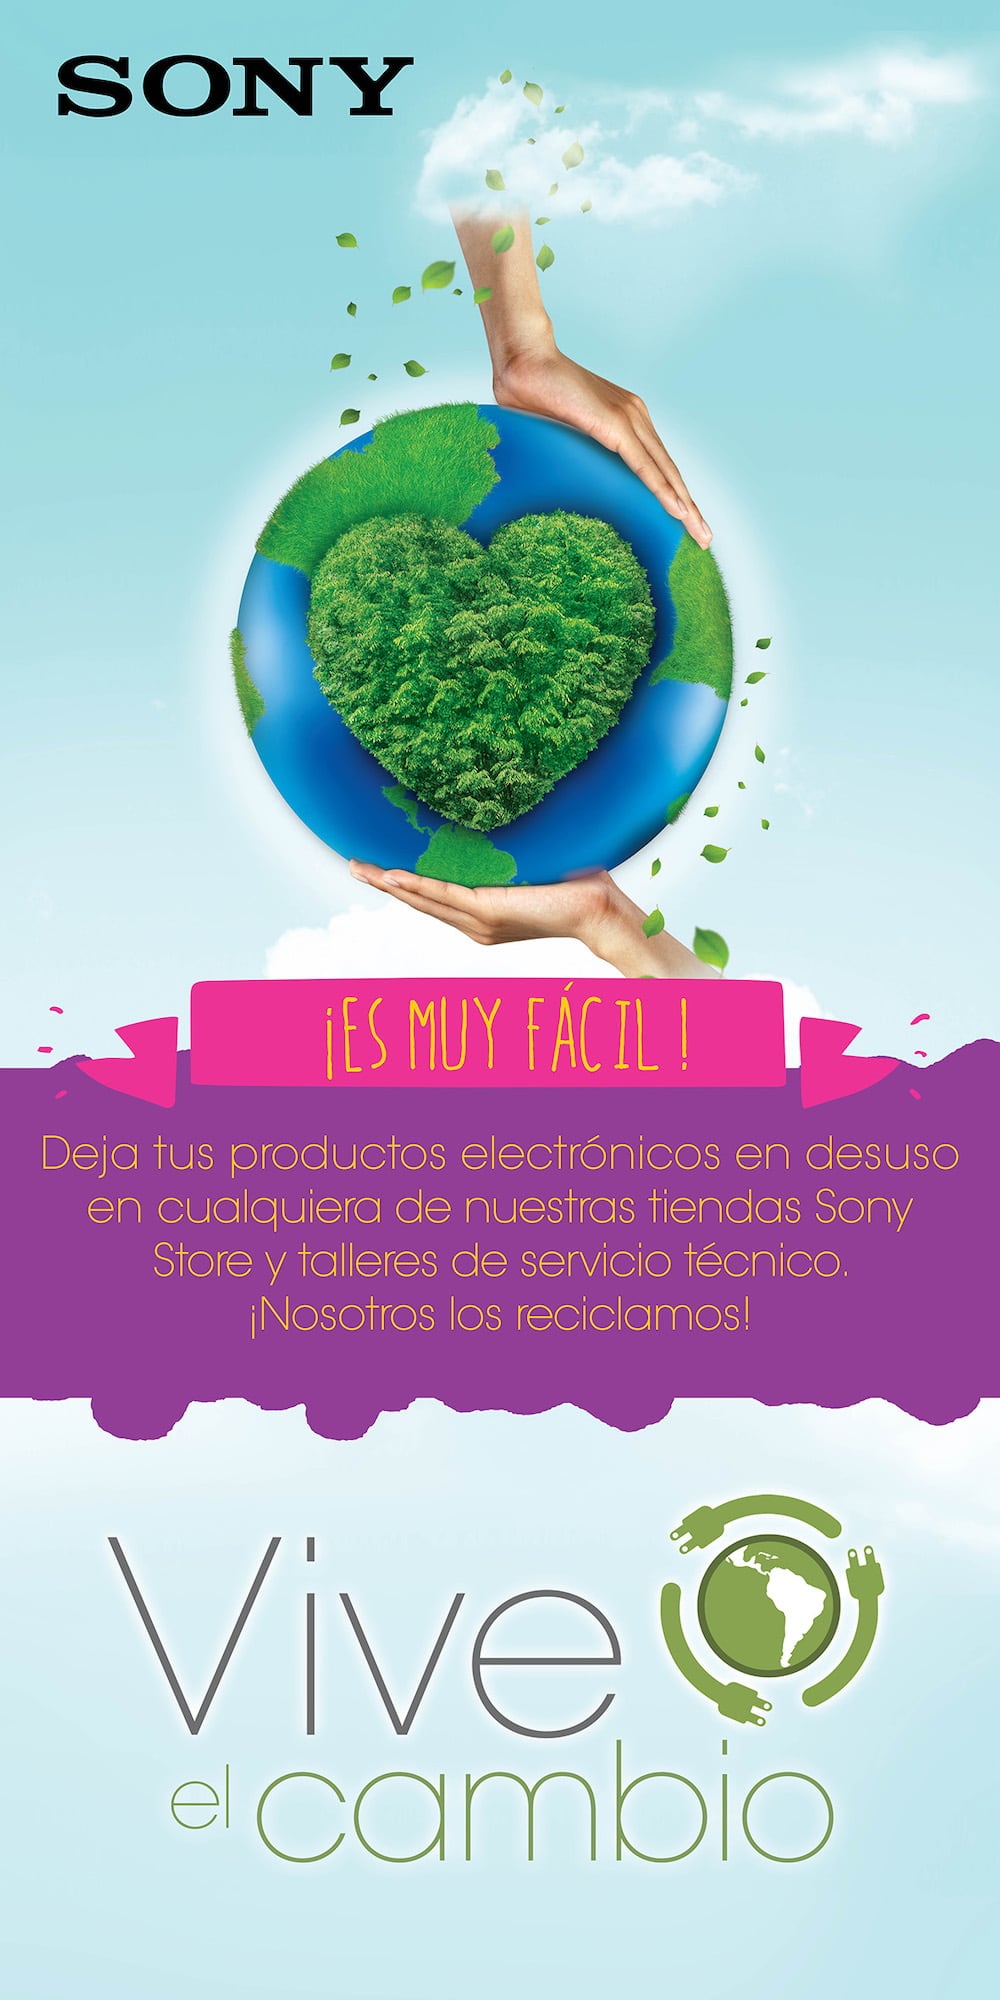 Sony Perú reduce su impacto al medio ambiente